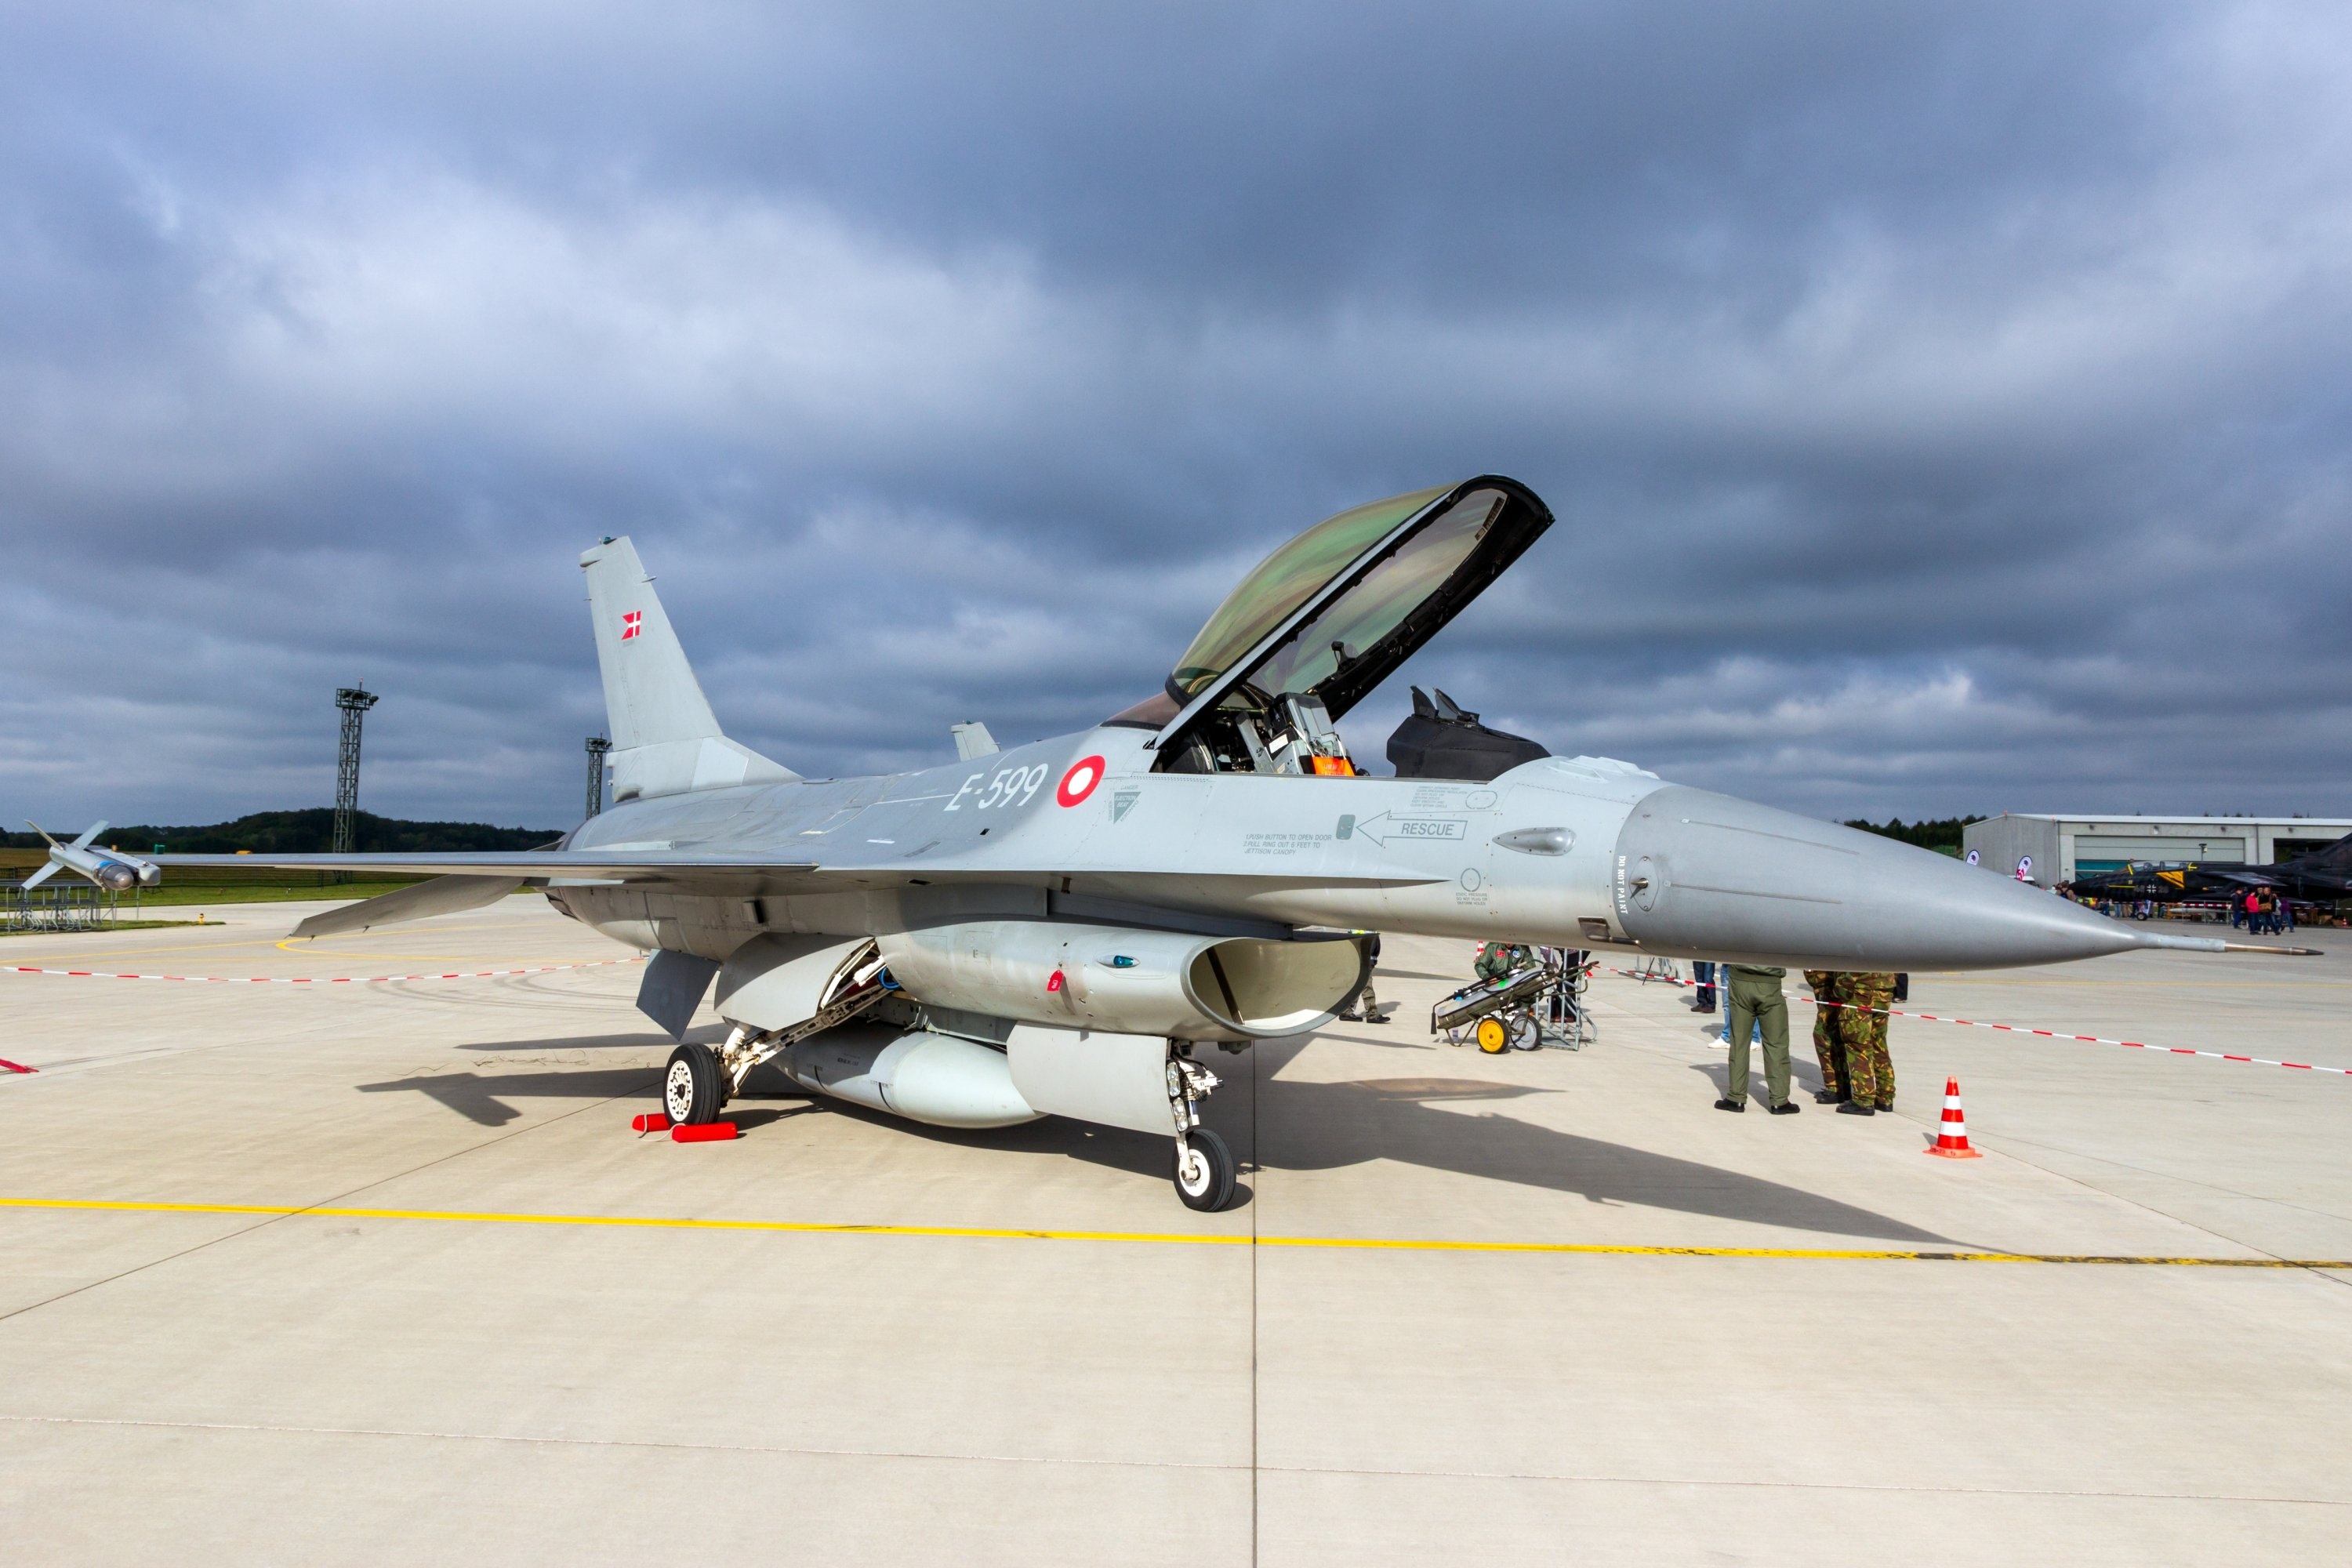 تا ترکیه رفتار خود را در زمینه حقوق بشر اصلاح نکند، به مخالفت با فروش F-16 ادامه می دهیم